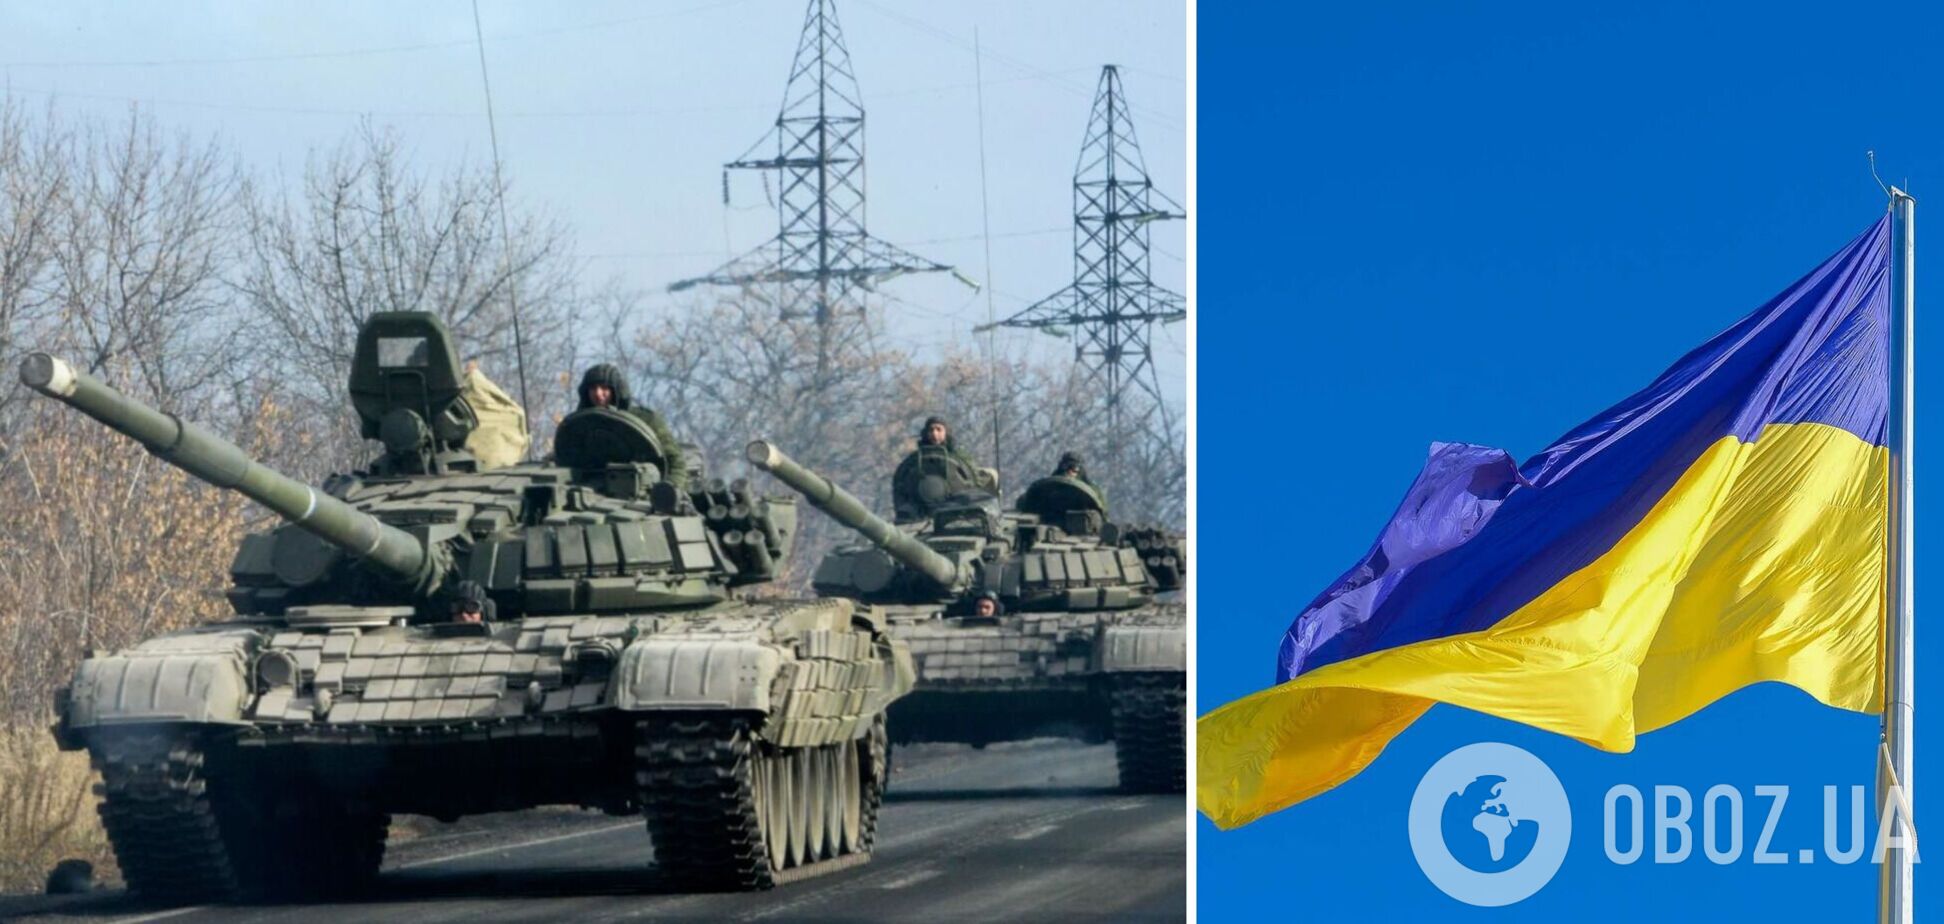 Российские оккупанты используют украинские флаги, чтобы ввести всех в заблуждение, а после открывают огонь – МВД